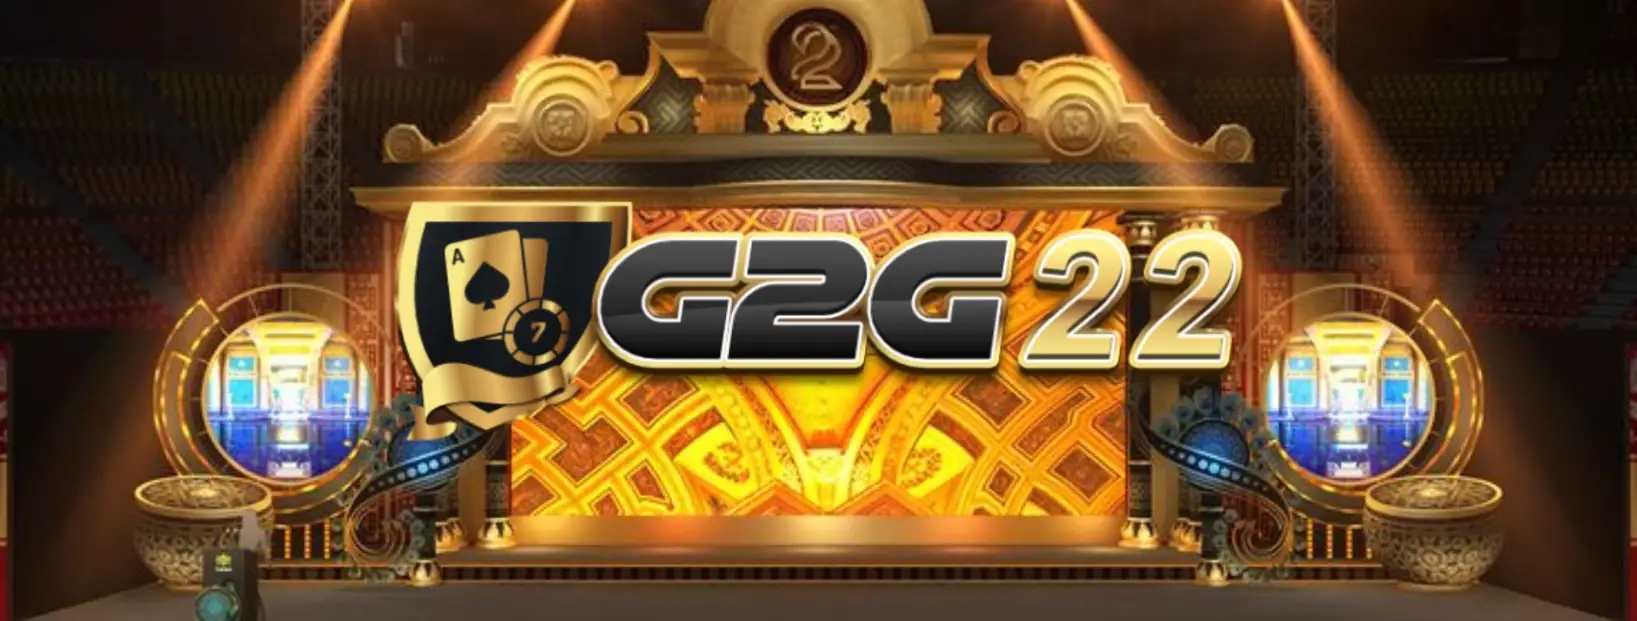 มาเข้าร่วมสนุกกับเกมสล็อตที่น่าตื่นเต้นกับ g2g22 ตอนนี้!